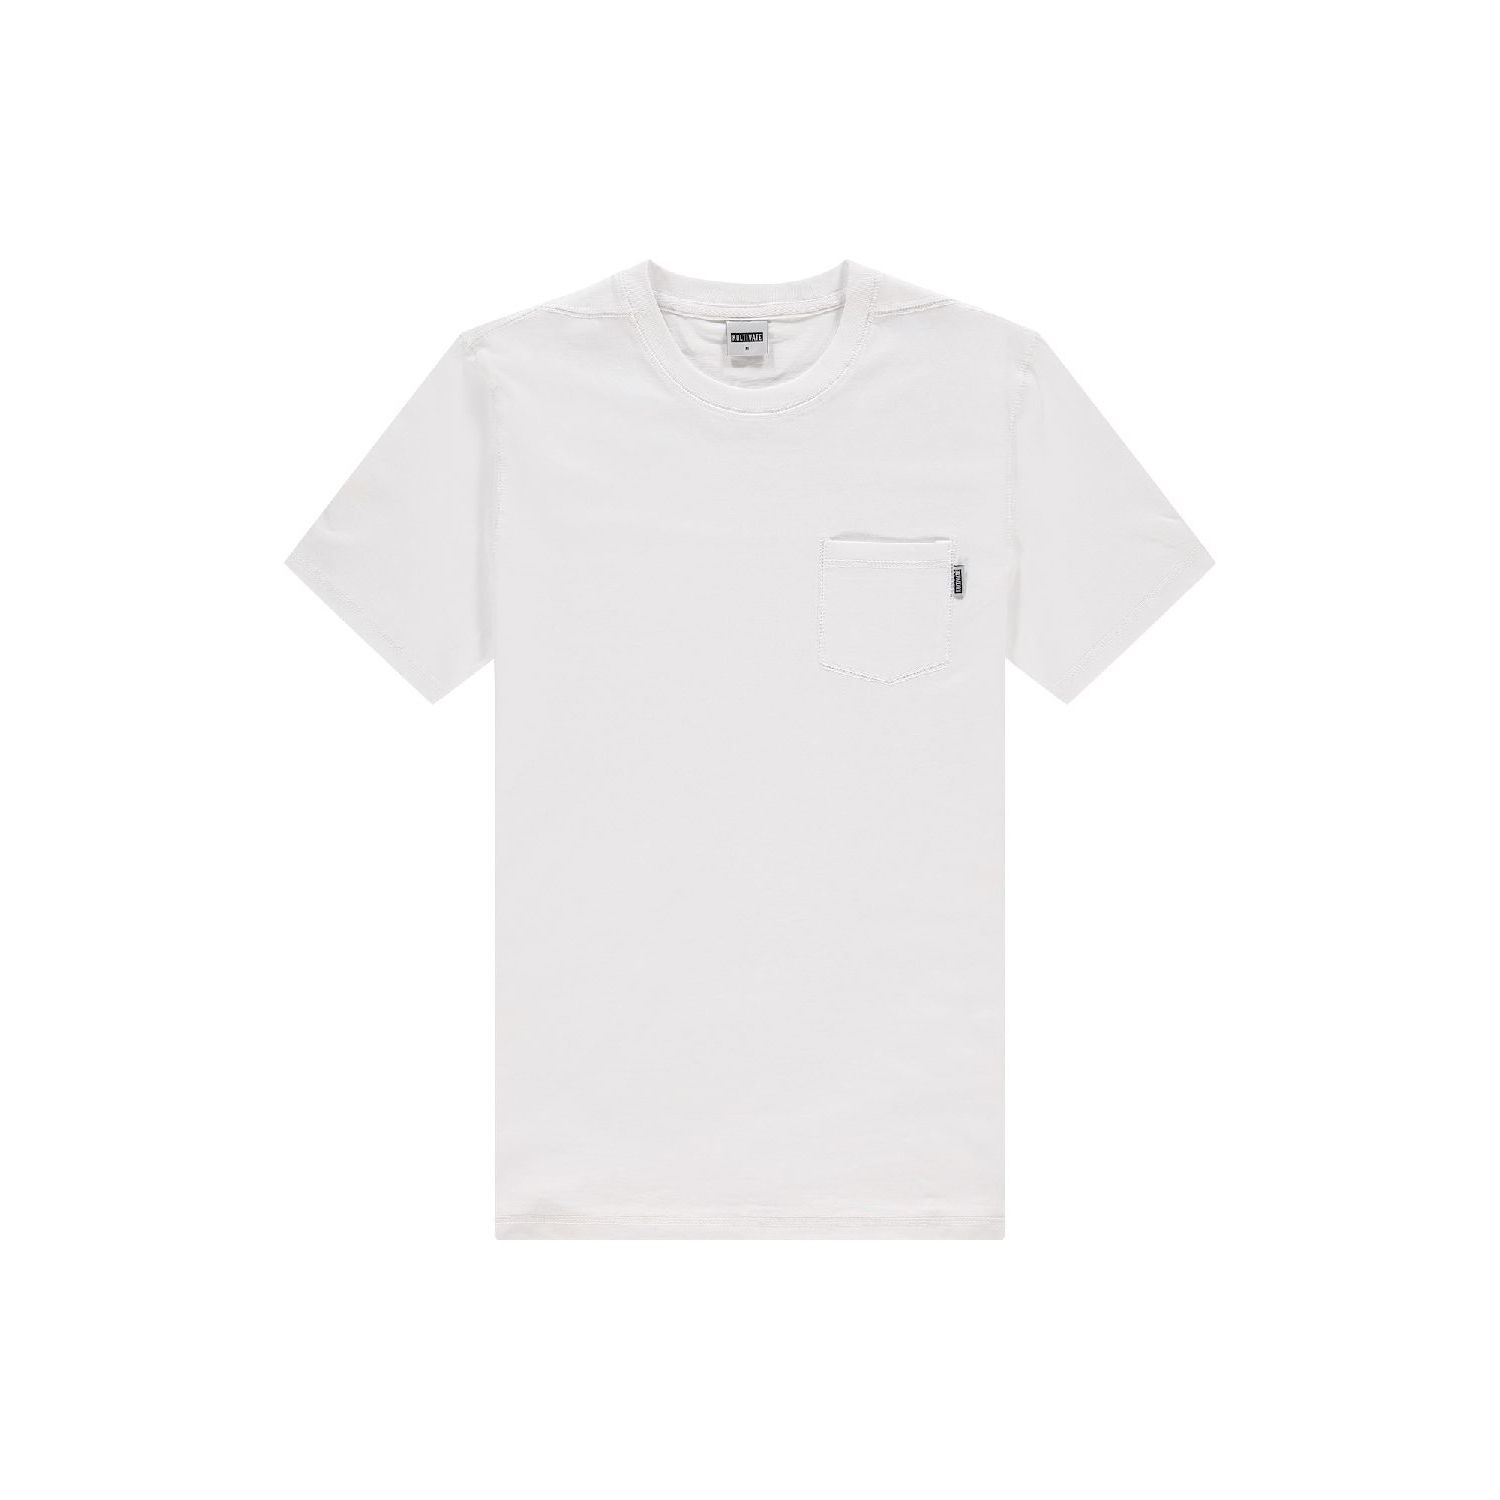 Kultivate ts damon t-shirt white